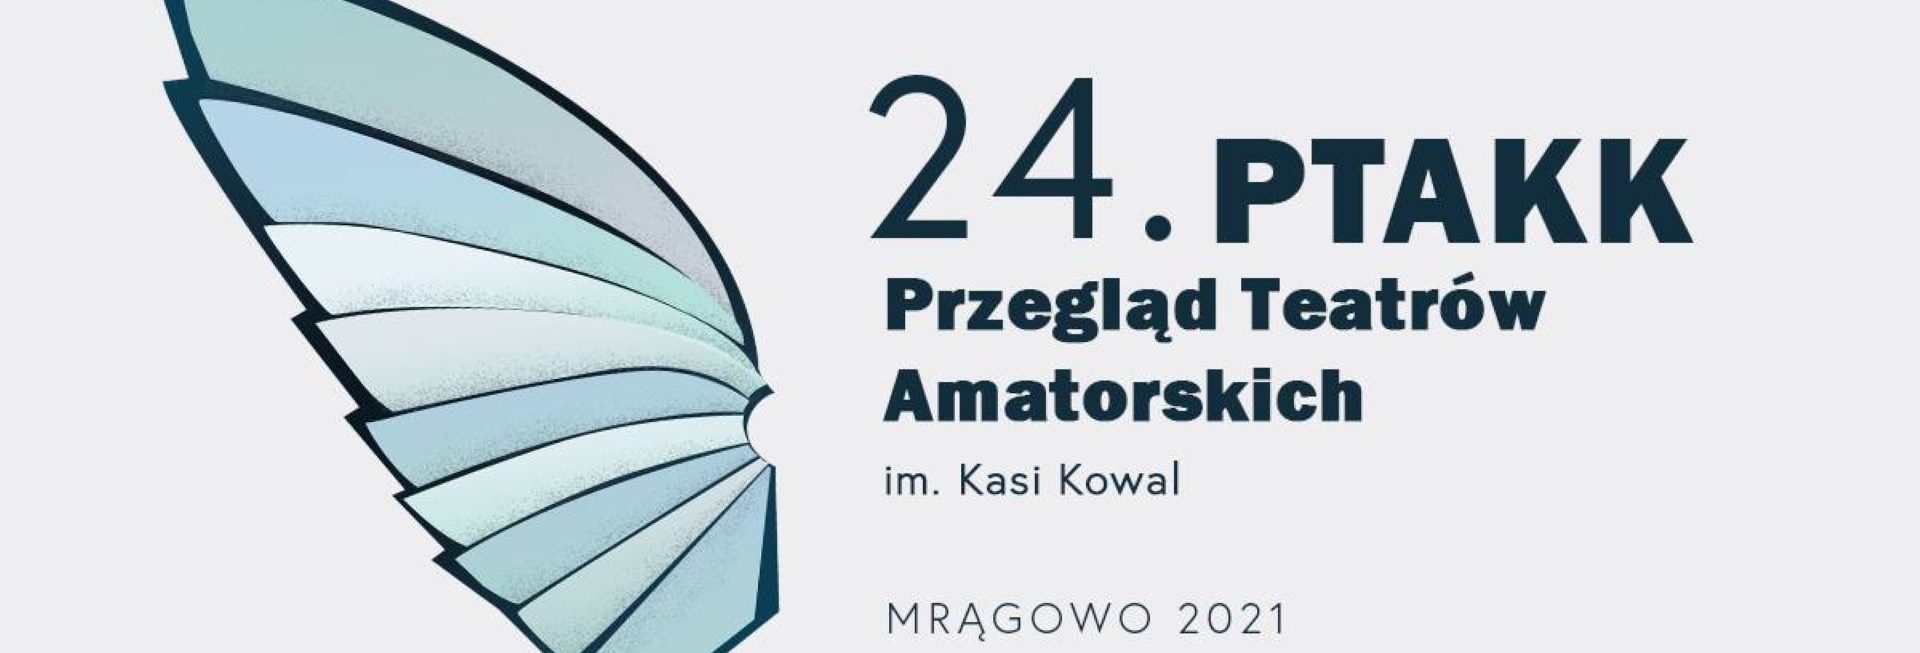 Plakat graficzny zapraszający do Mrągowa na cykliczną imprezę 24.edycję Przeglądu Teatrów Amatorskich im. Kasi Kowal - Mrągowo 2021.